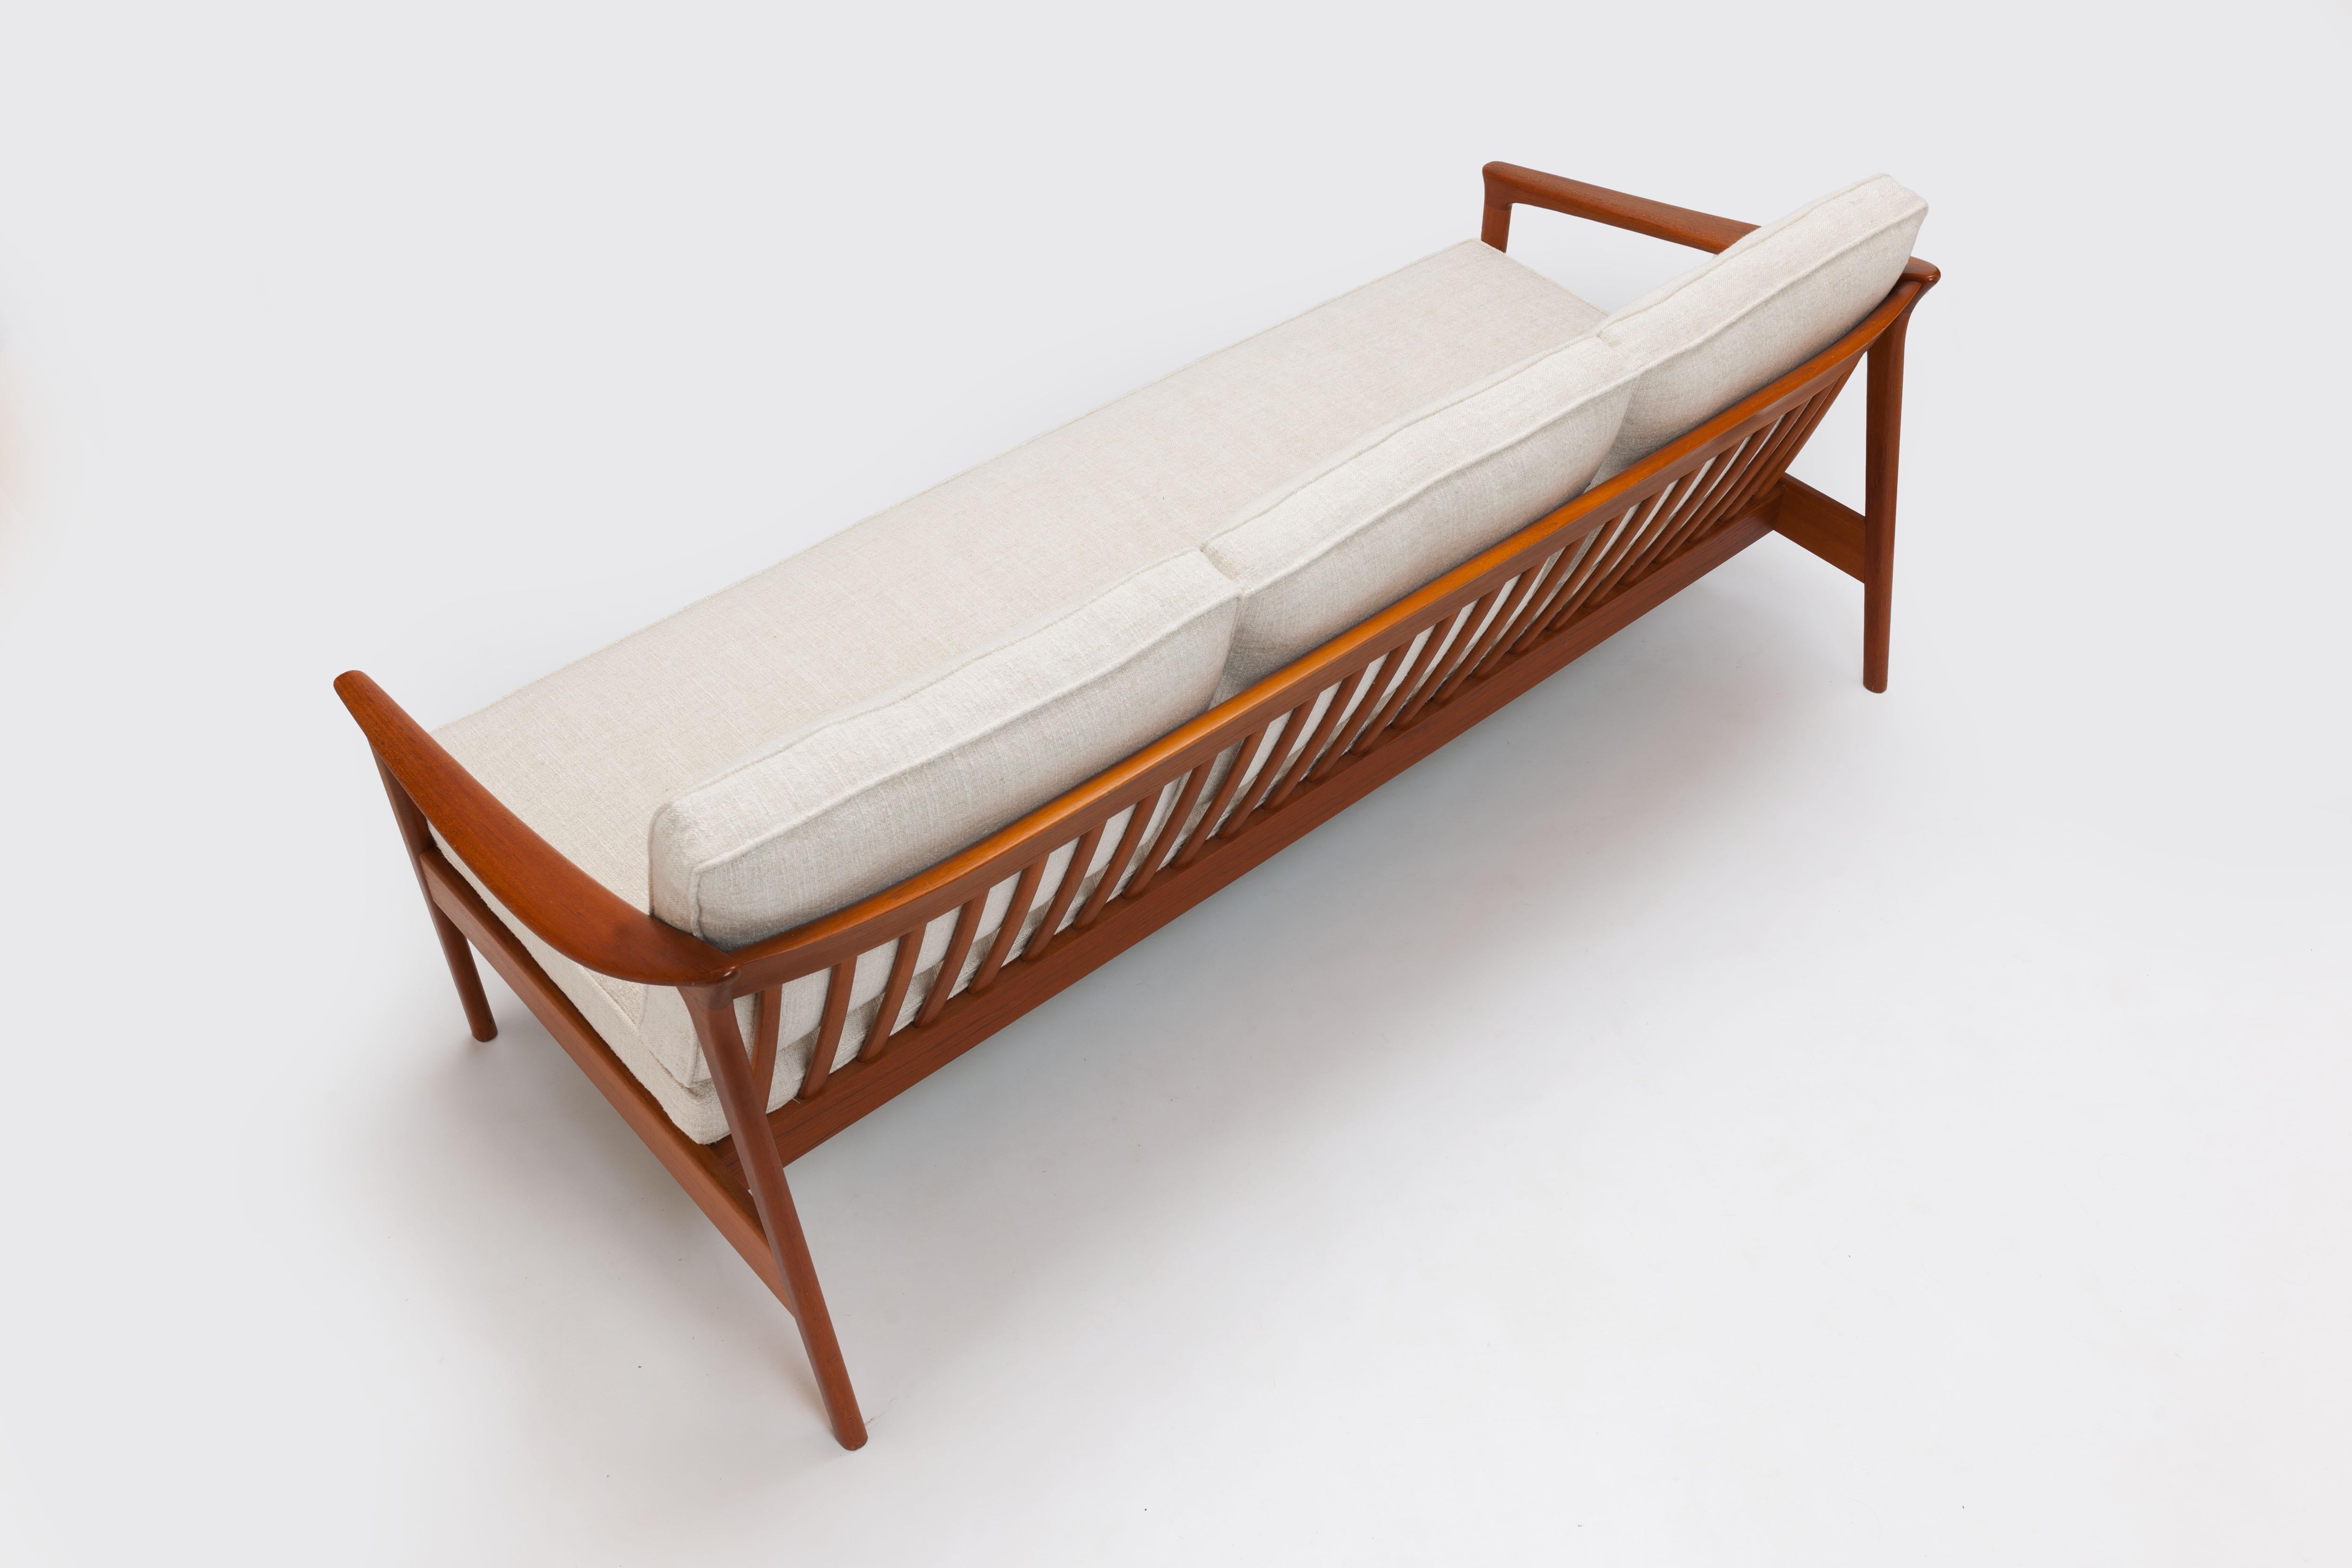 Fabric Refined Folke Ohlsson 3-Seat Sofa for Bodafors Sweden, All New Upholstery